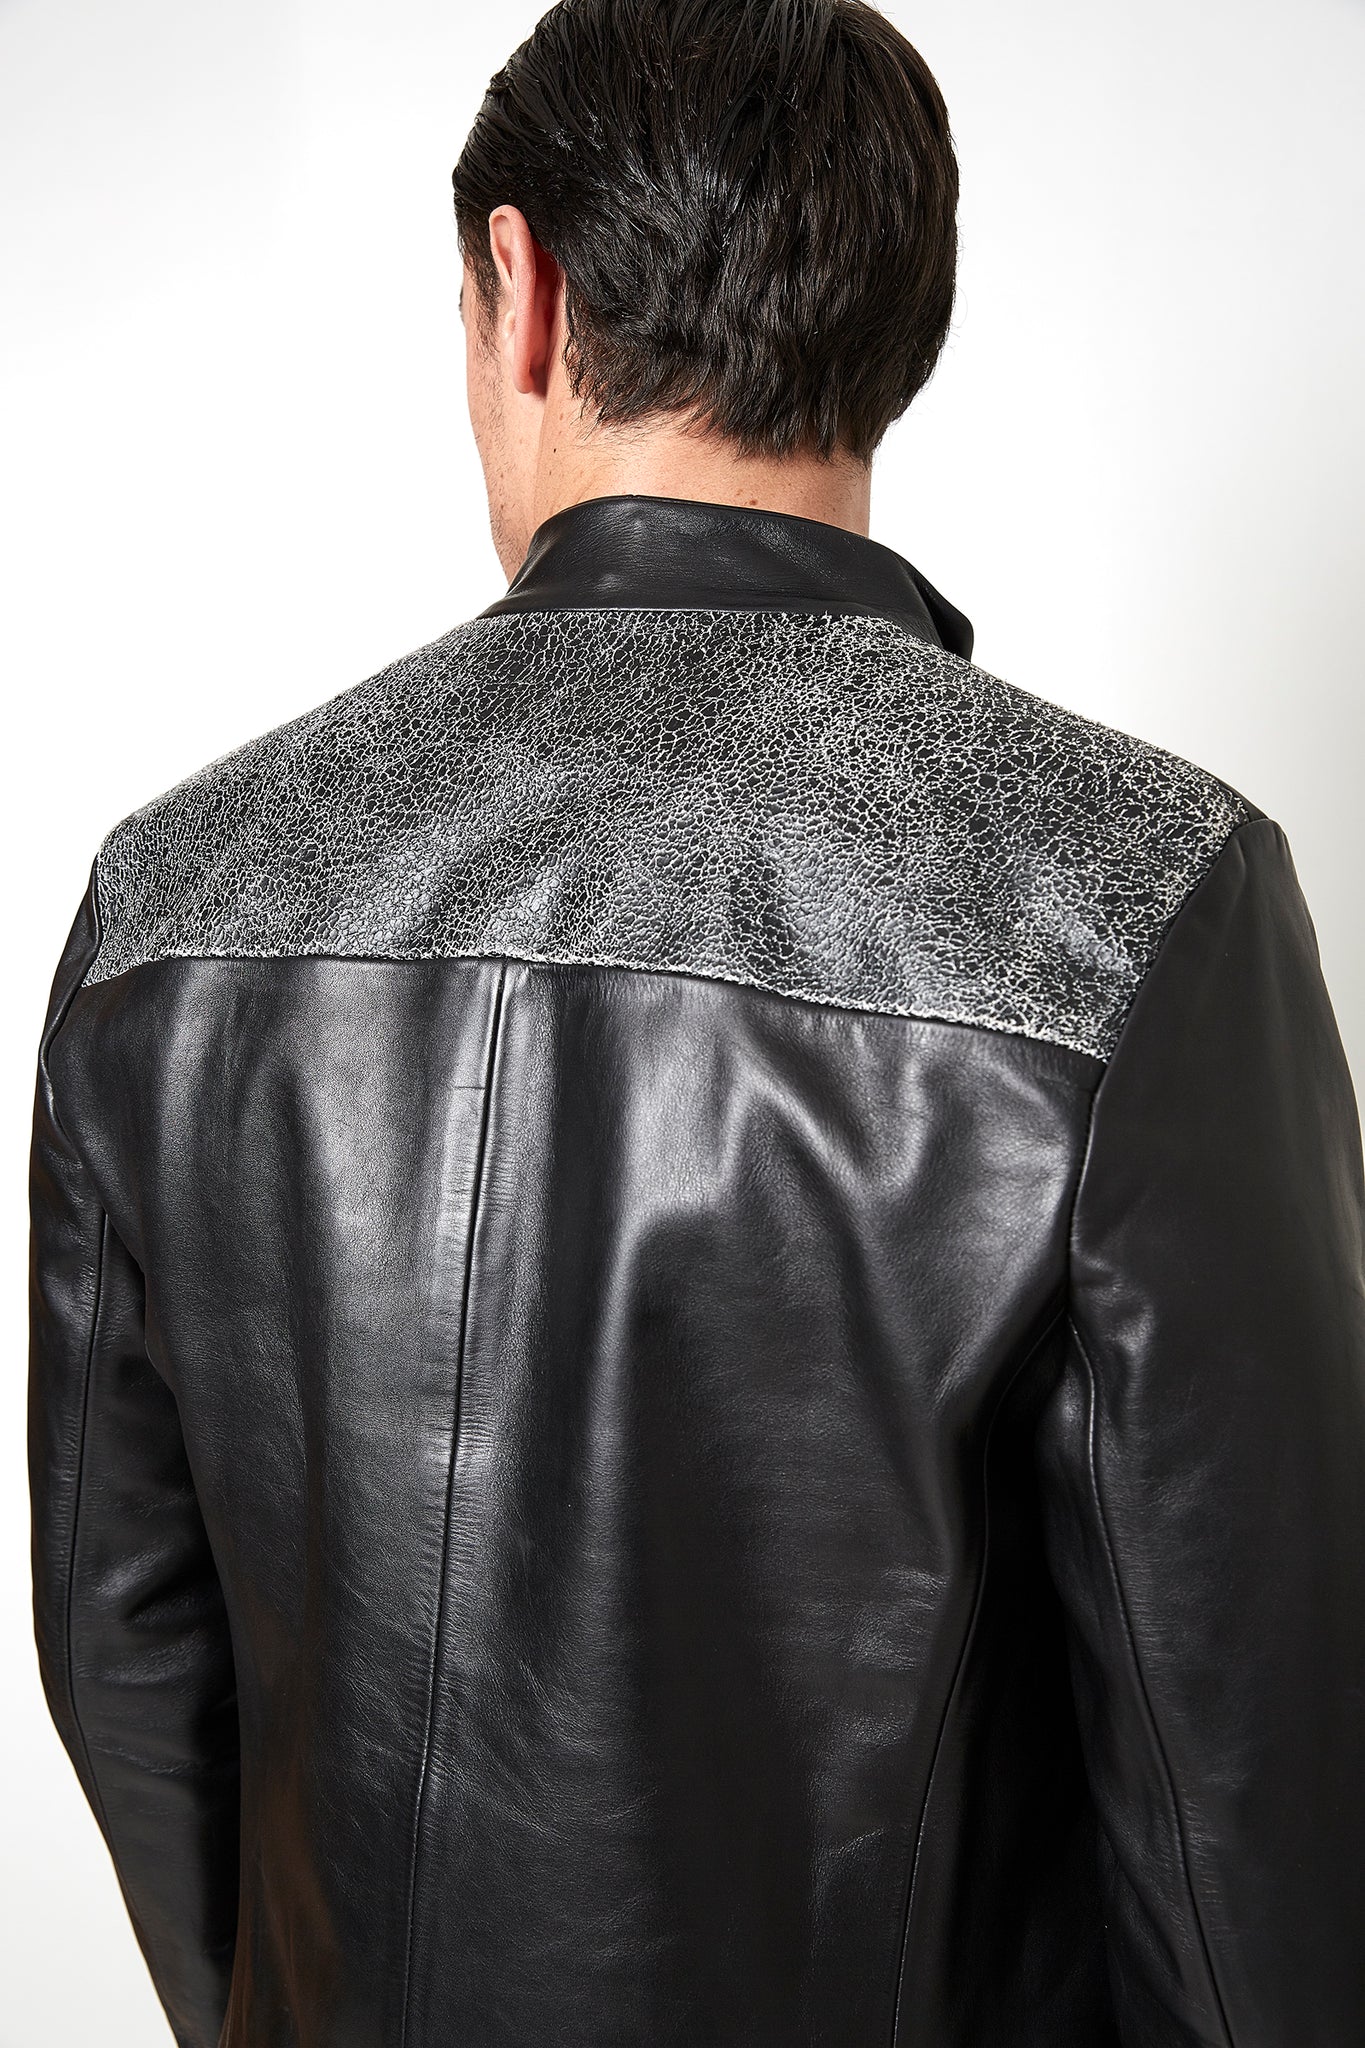 Sébastien Blondin veste jacket cuir leather chic été summer noir black créateur designer nouveau new basique basic mode fashion homme man men men's world